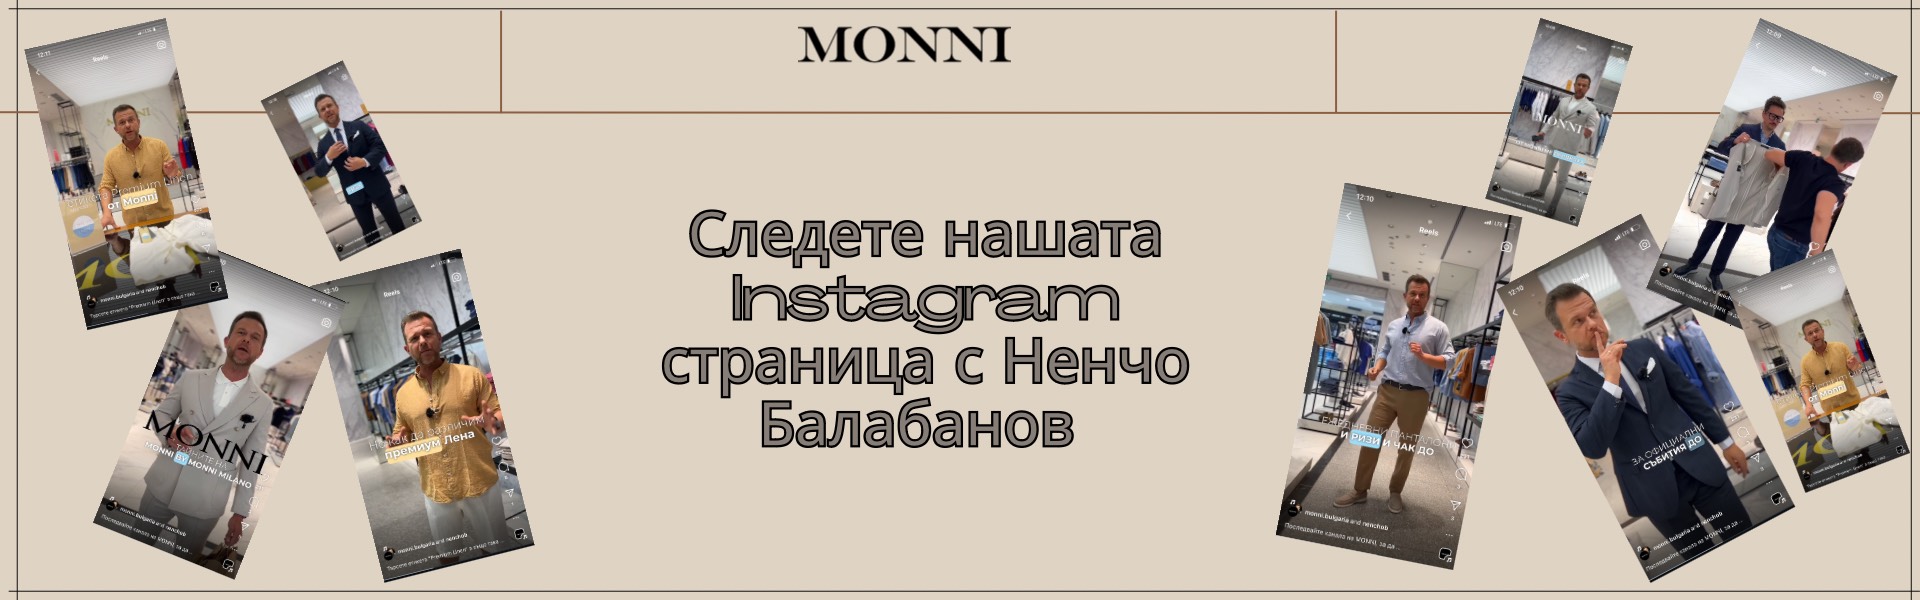 instagram monni